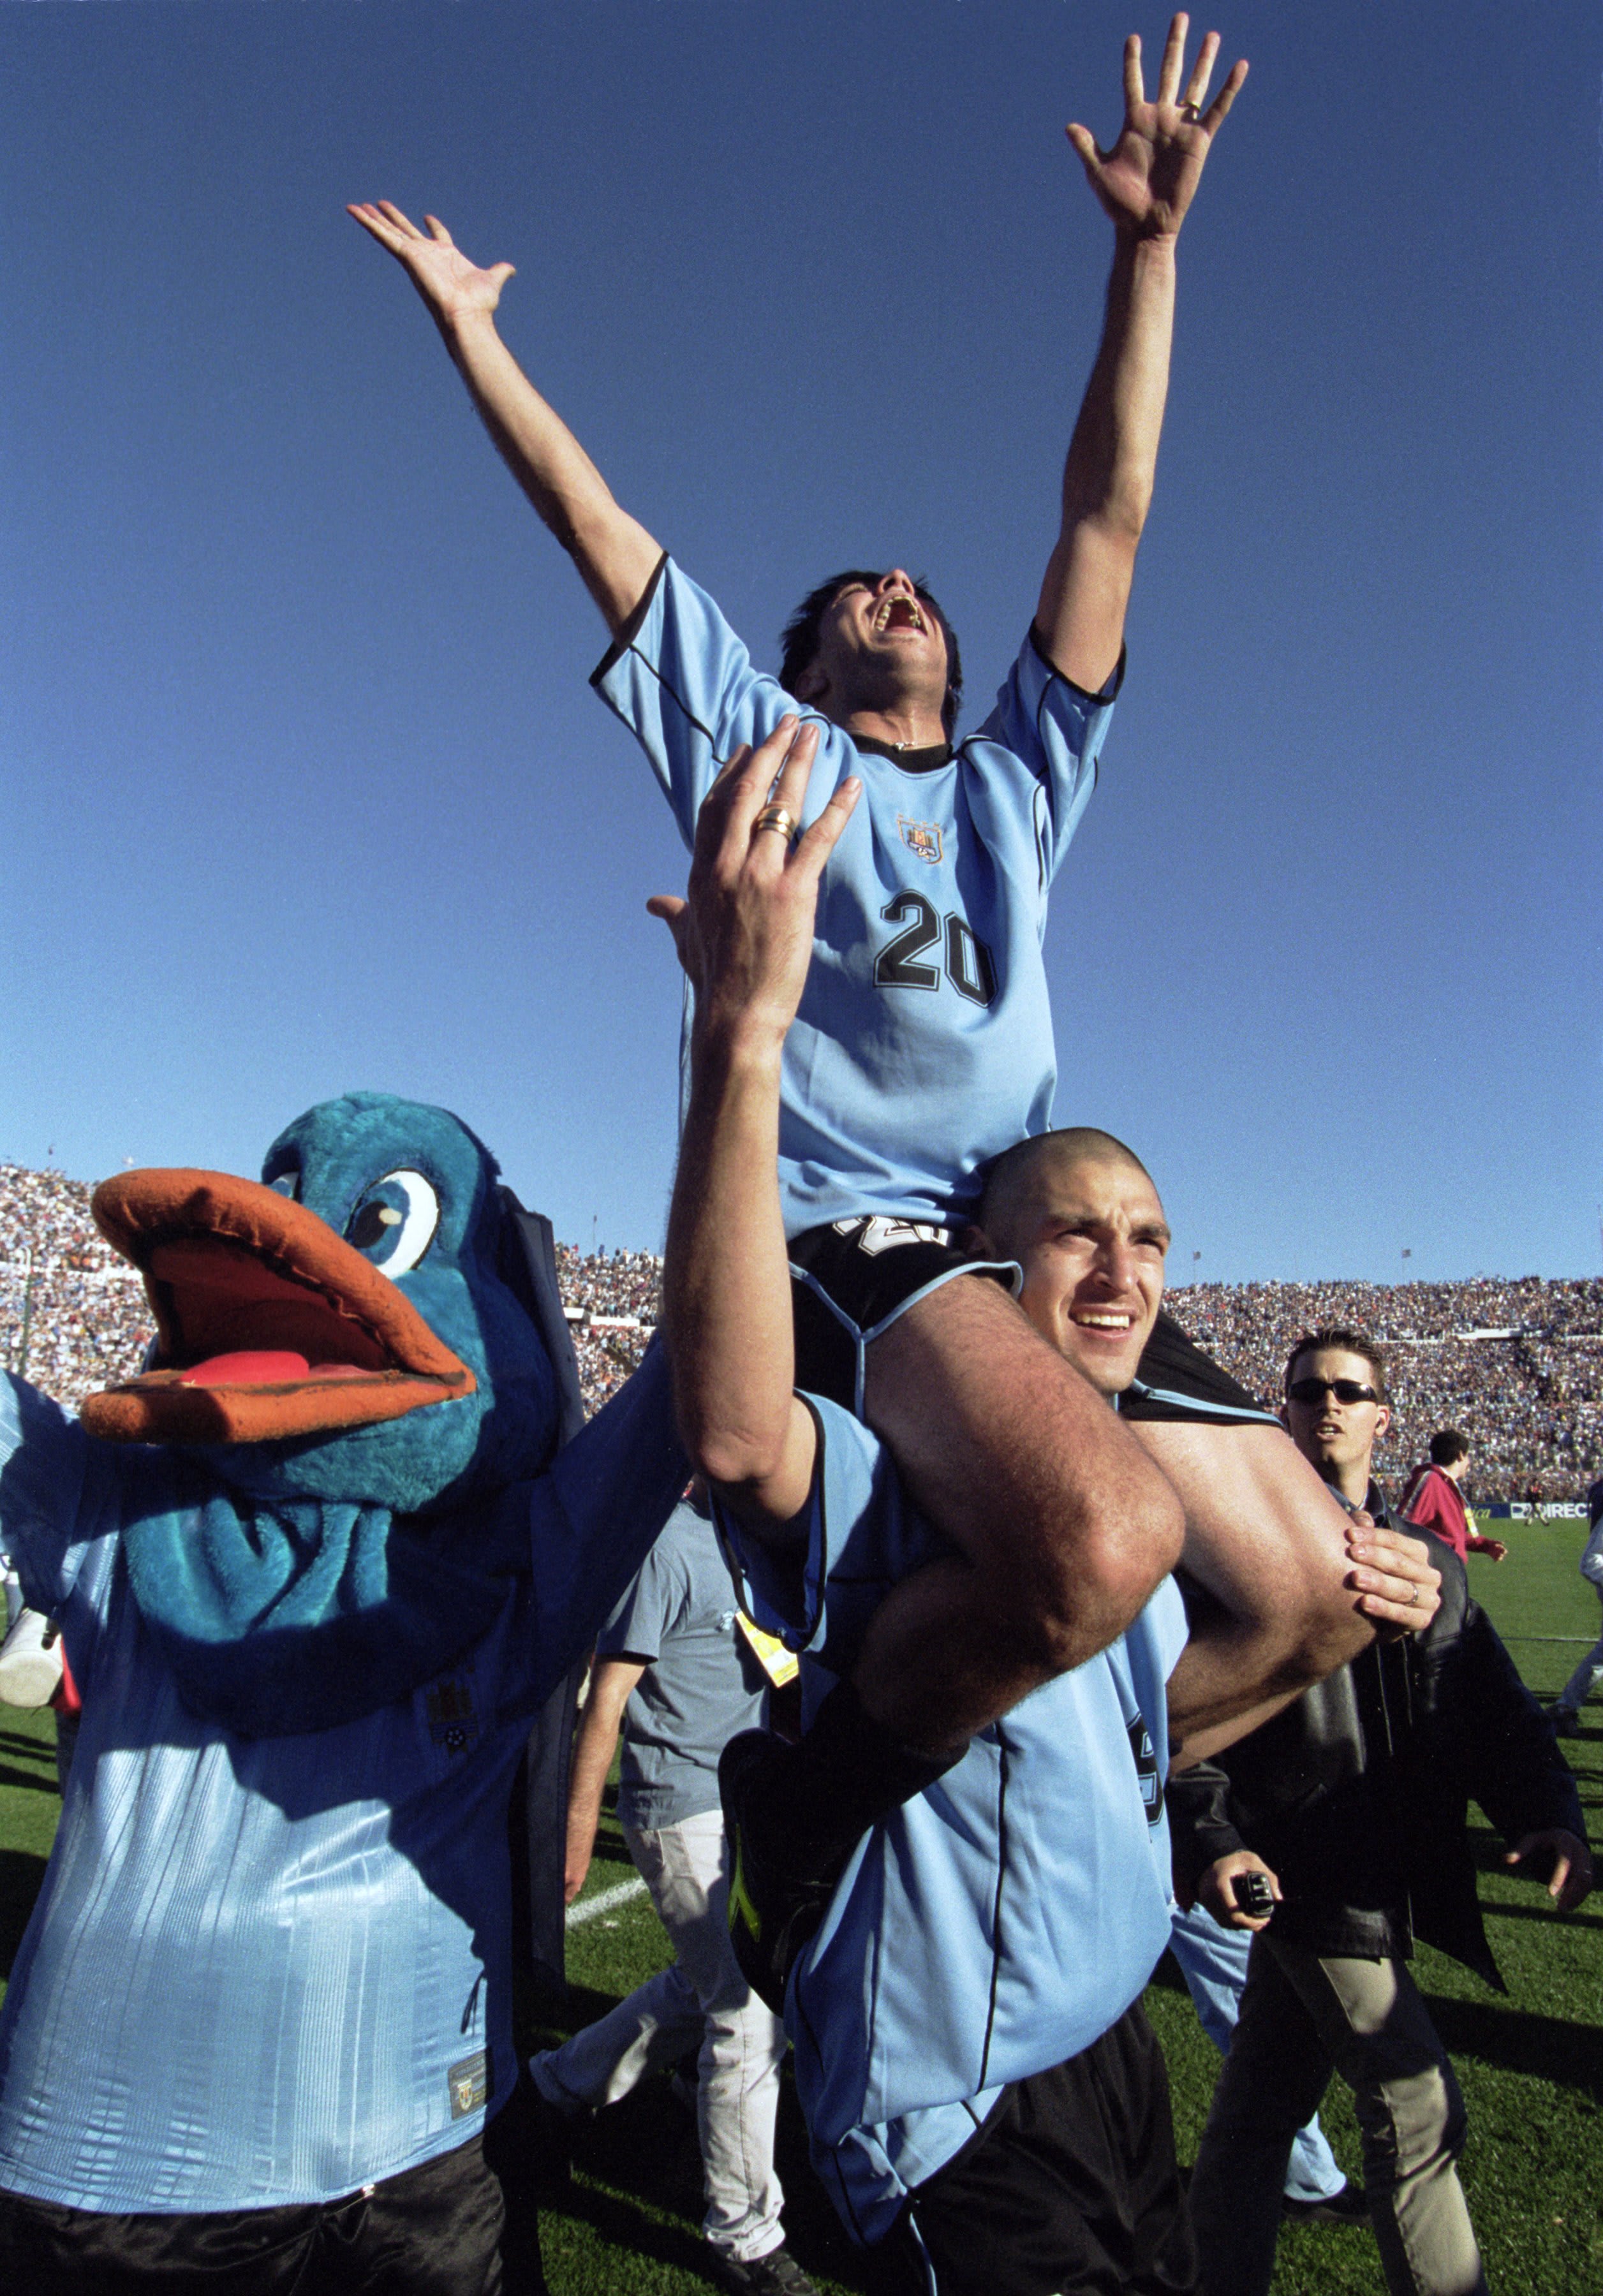 דייגו אלונסו נושא על כתפיו את אלברו רקובה, נבחרת אורוגוואי 2001